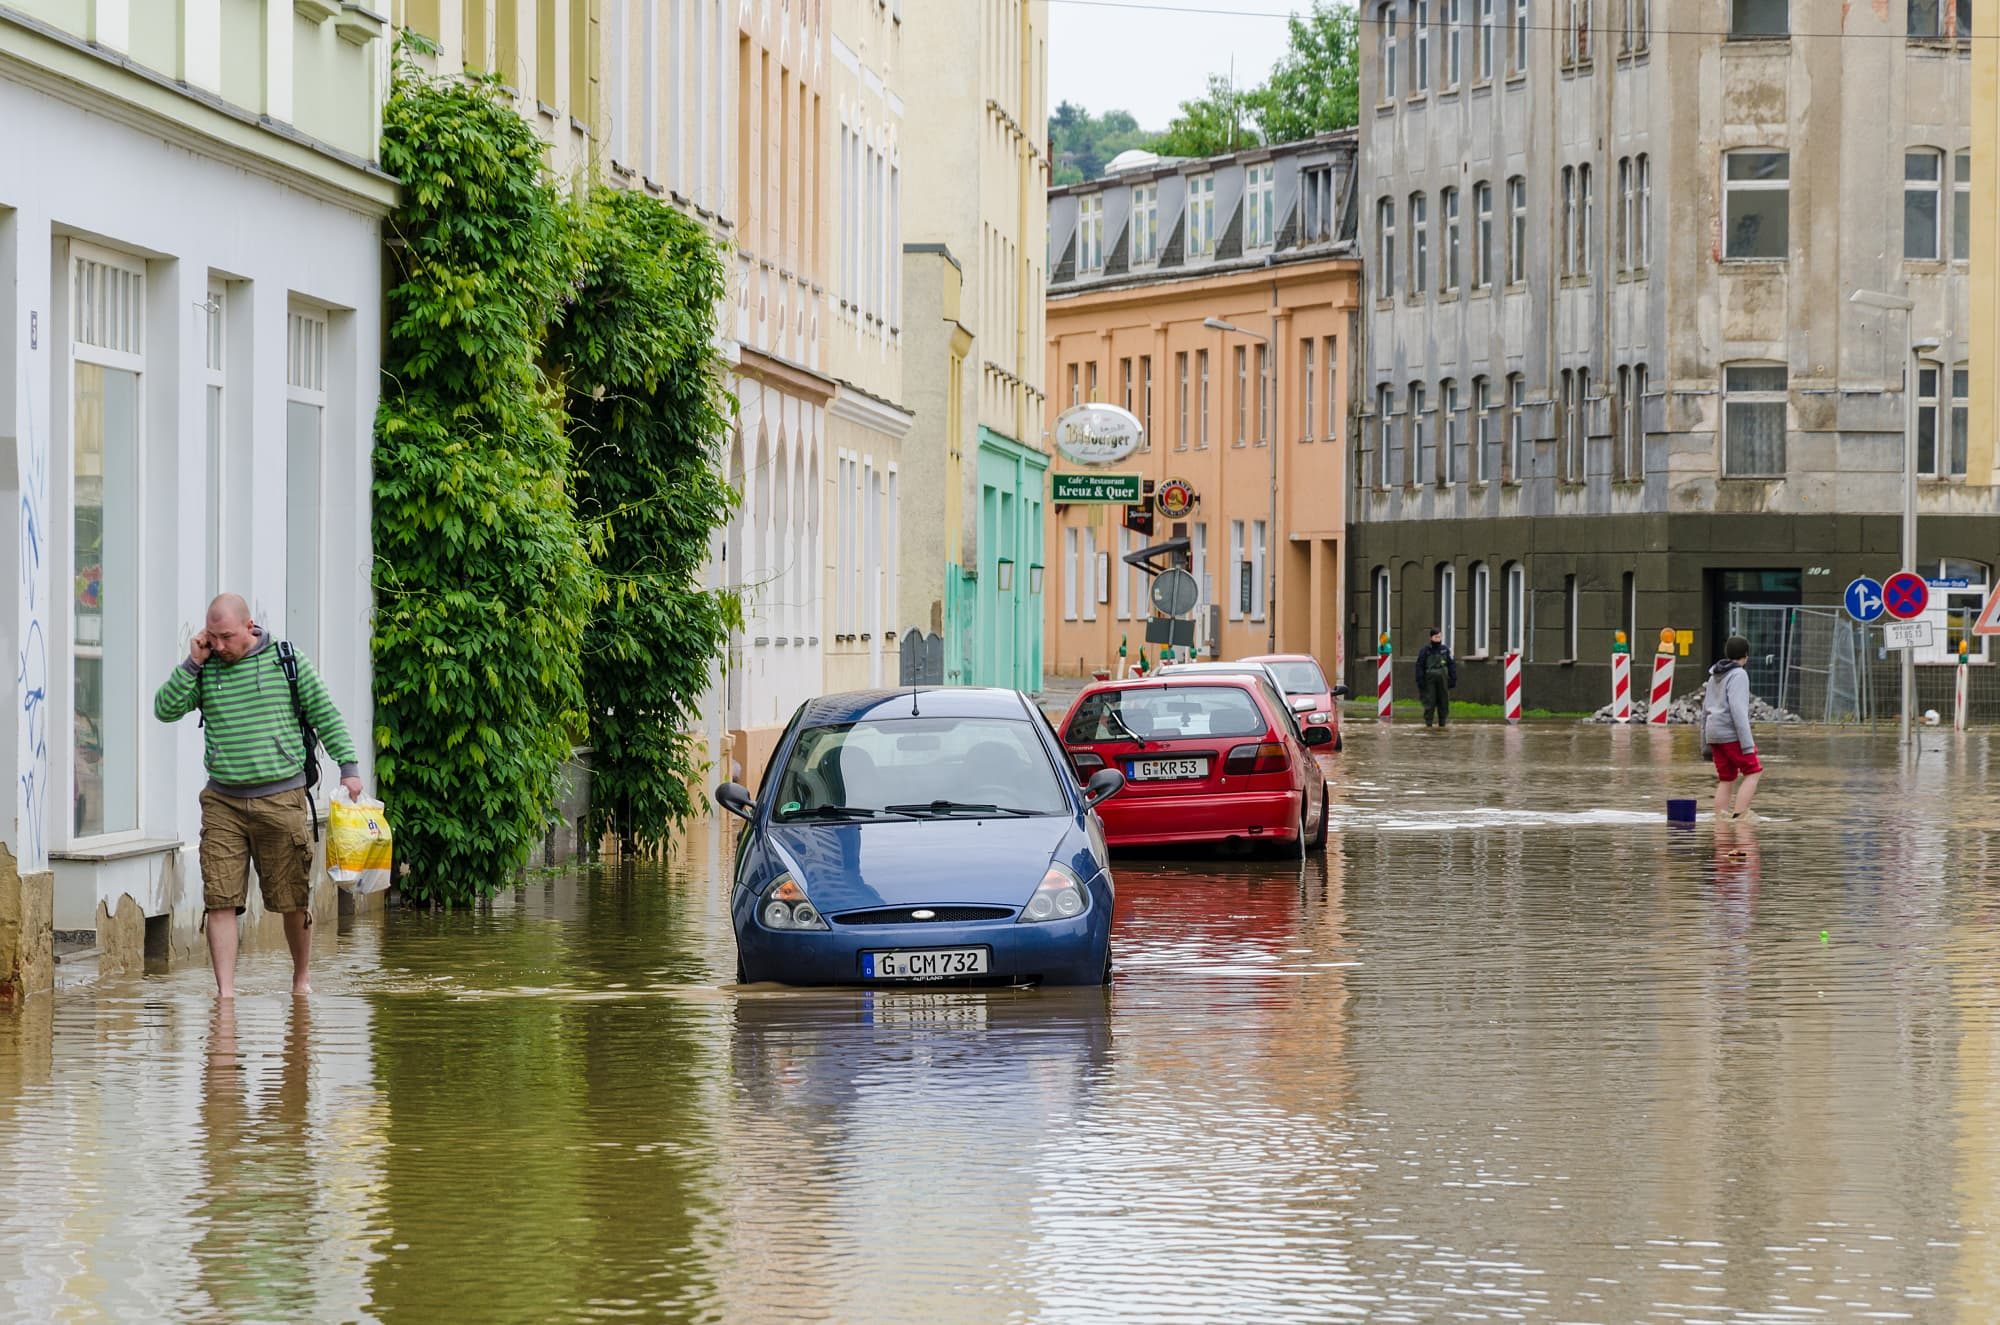 Hochwasser in Gera 2013 | Starke Regenfälle Ende Mai 2013 lassen die Weiße Elster anschwellen, in den Folgetagen sind unter anderem Teile von Gera überflutet. Am 3. Juni sind zeitweise 10 000 Menschen ohne Strom.